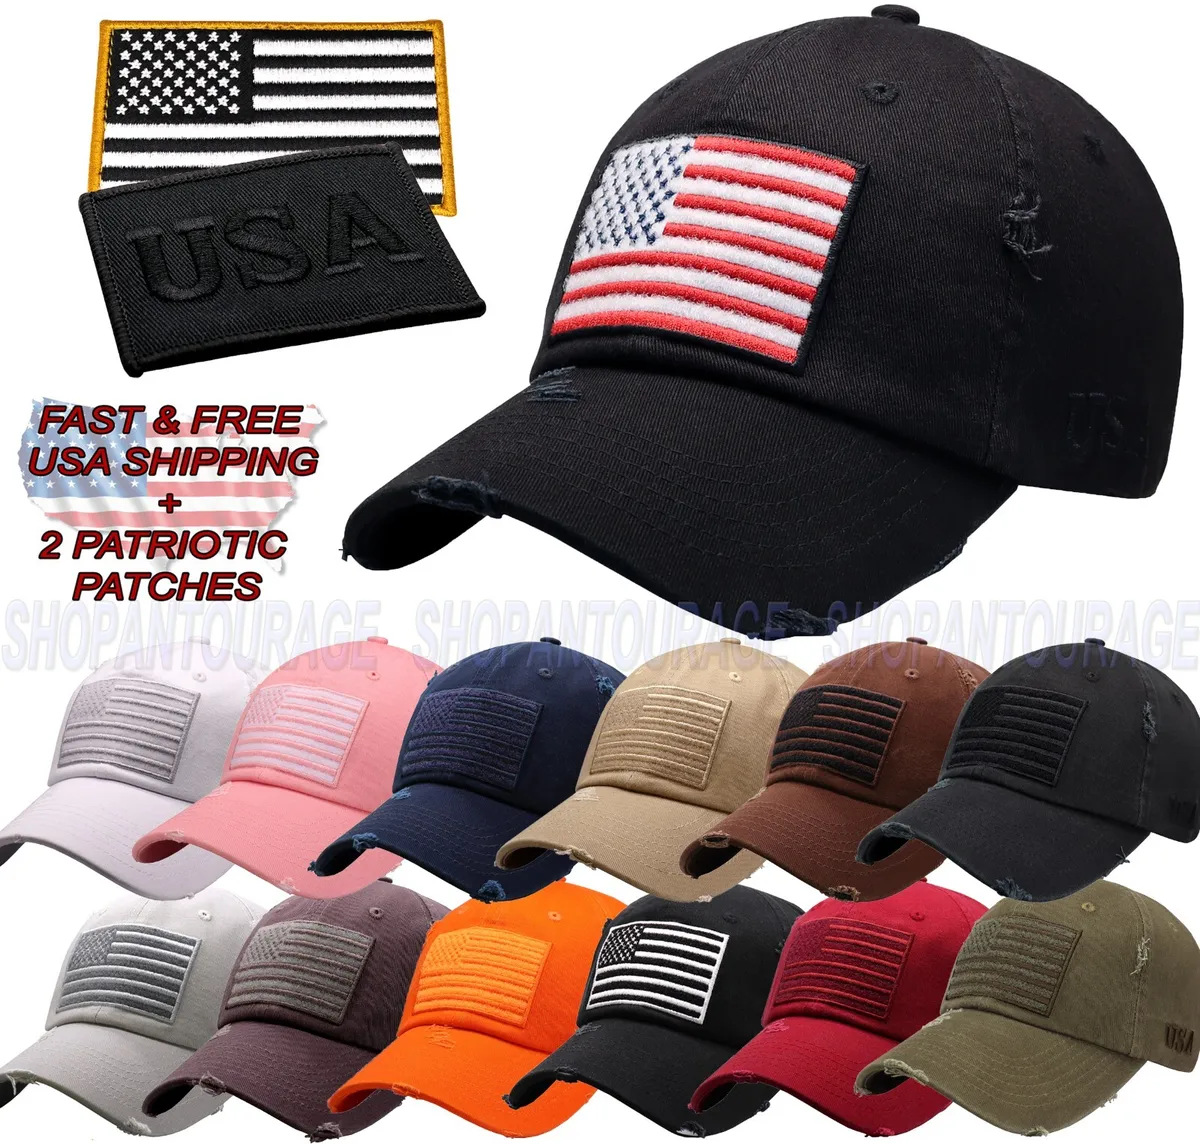 ANTOURAGE American Flag Vintage Tactical Baseball Hat for Men